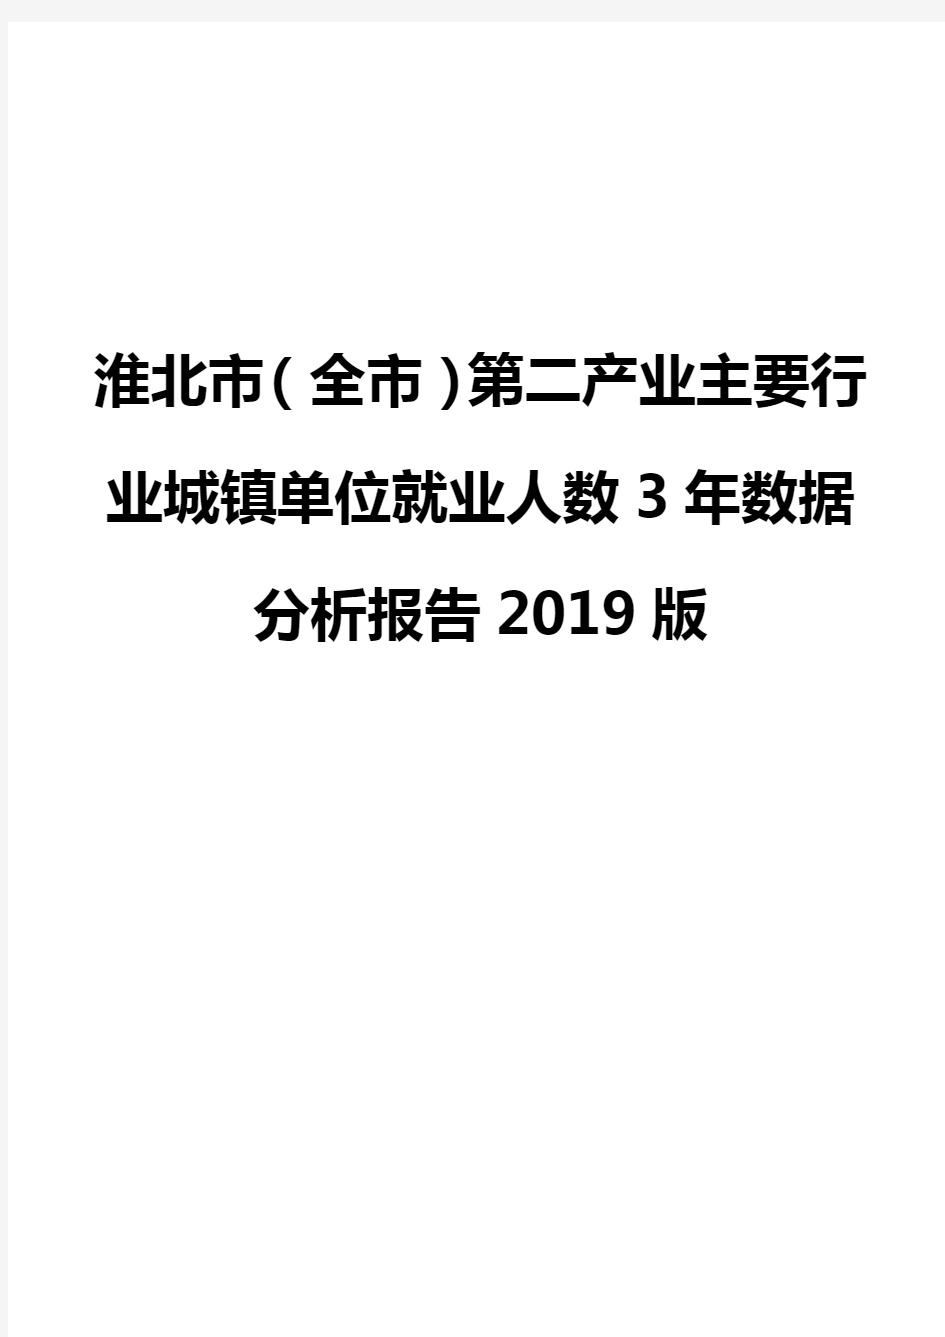 淮北市(全市)第二产业主要行业城镇单位就业人数3年数据分析报告2019版